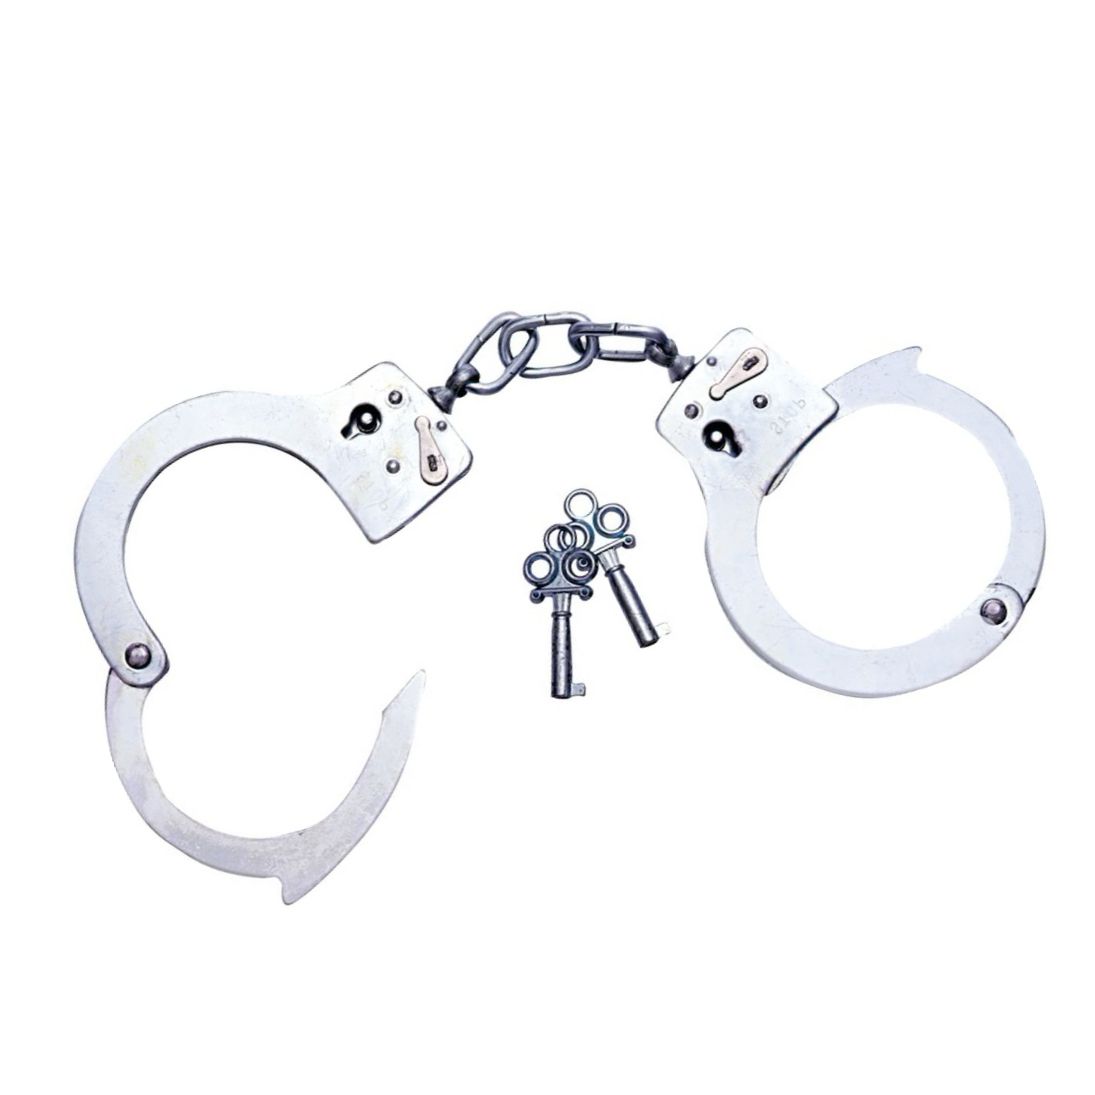 Catuse Police Arrest Handcuffs Argintiu